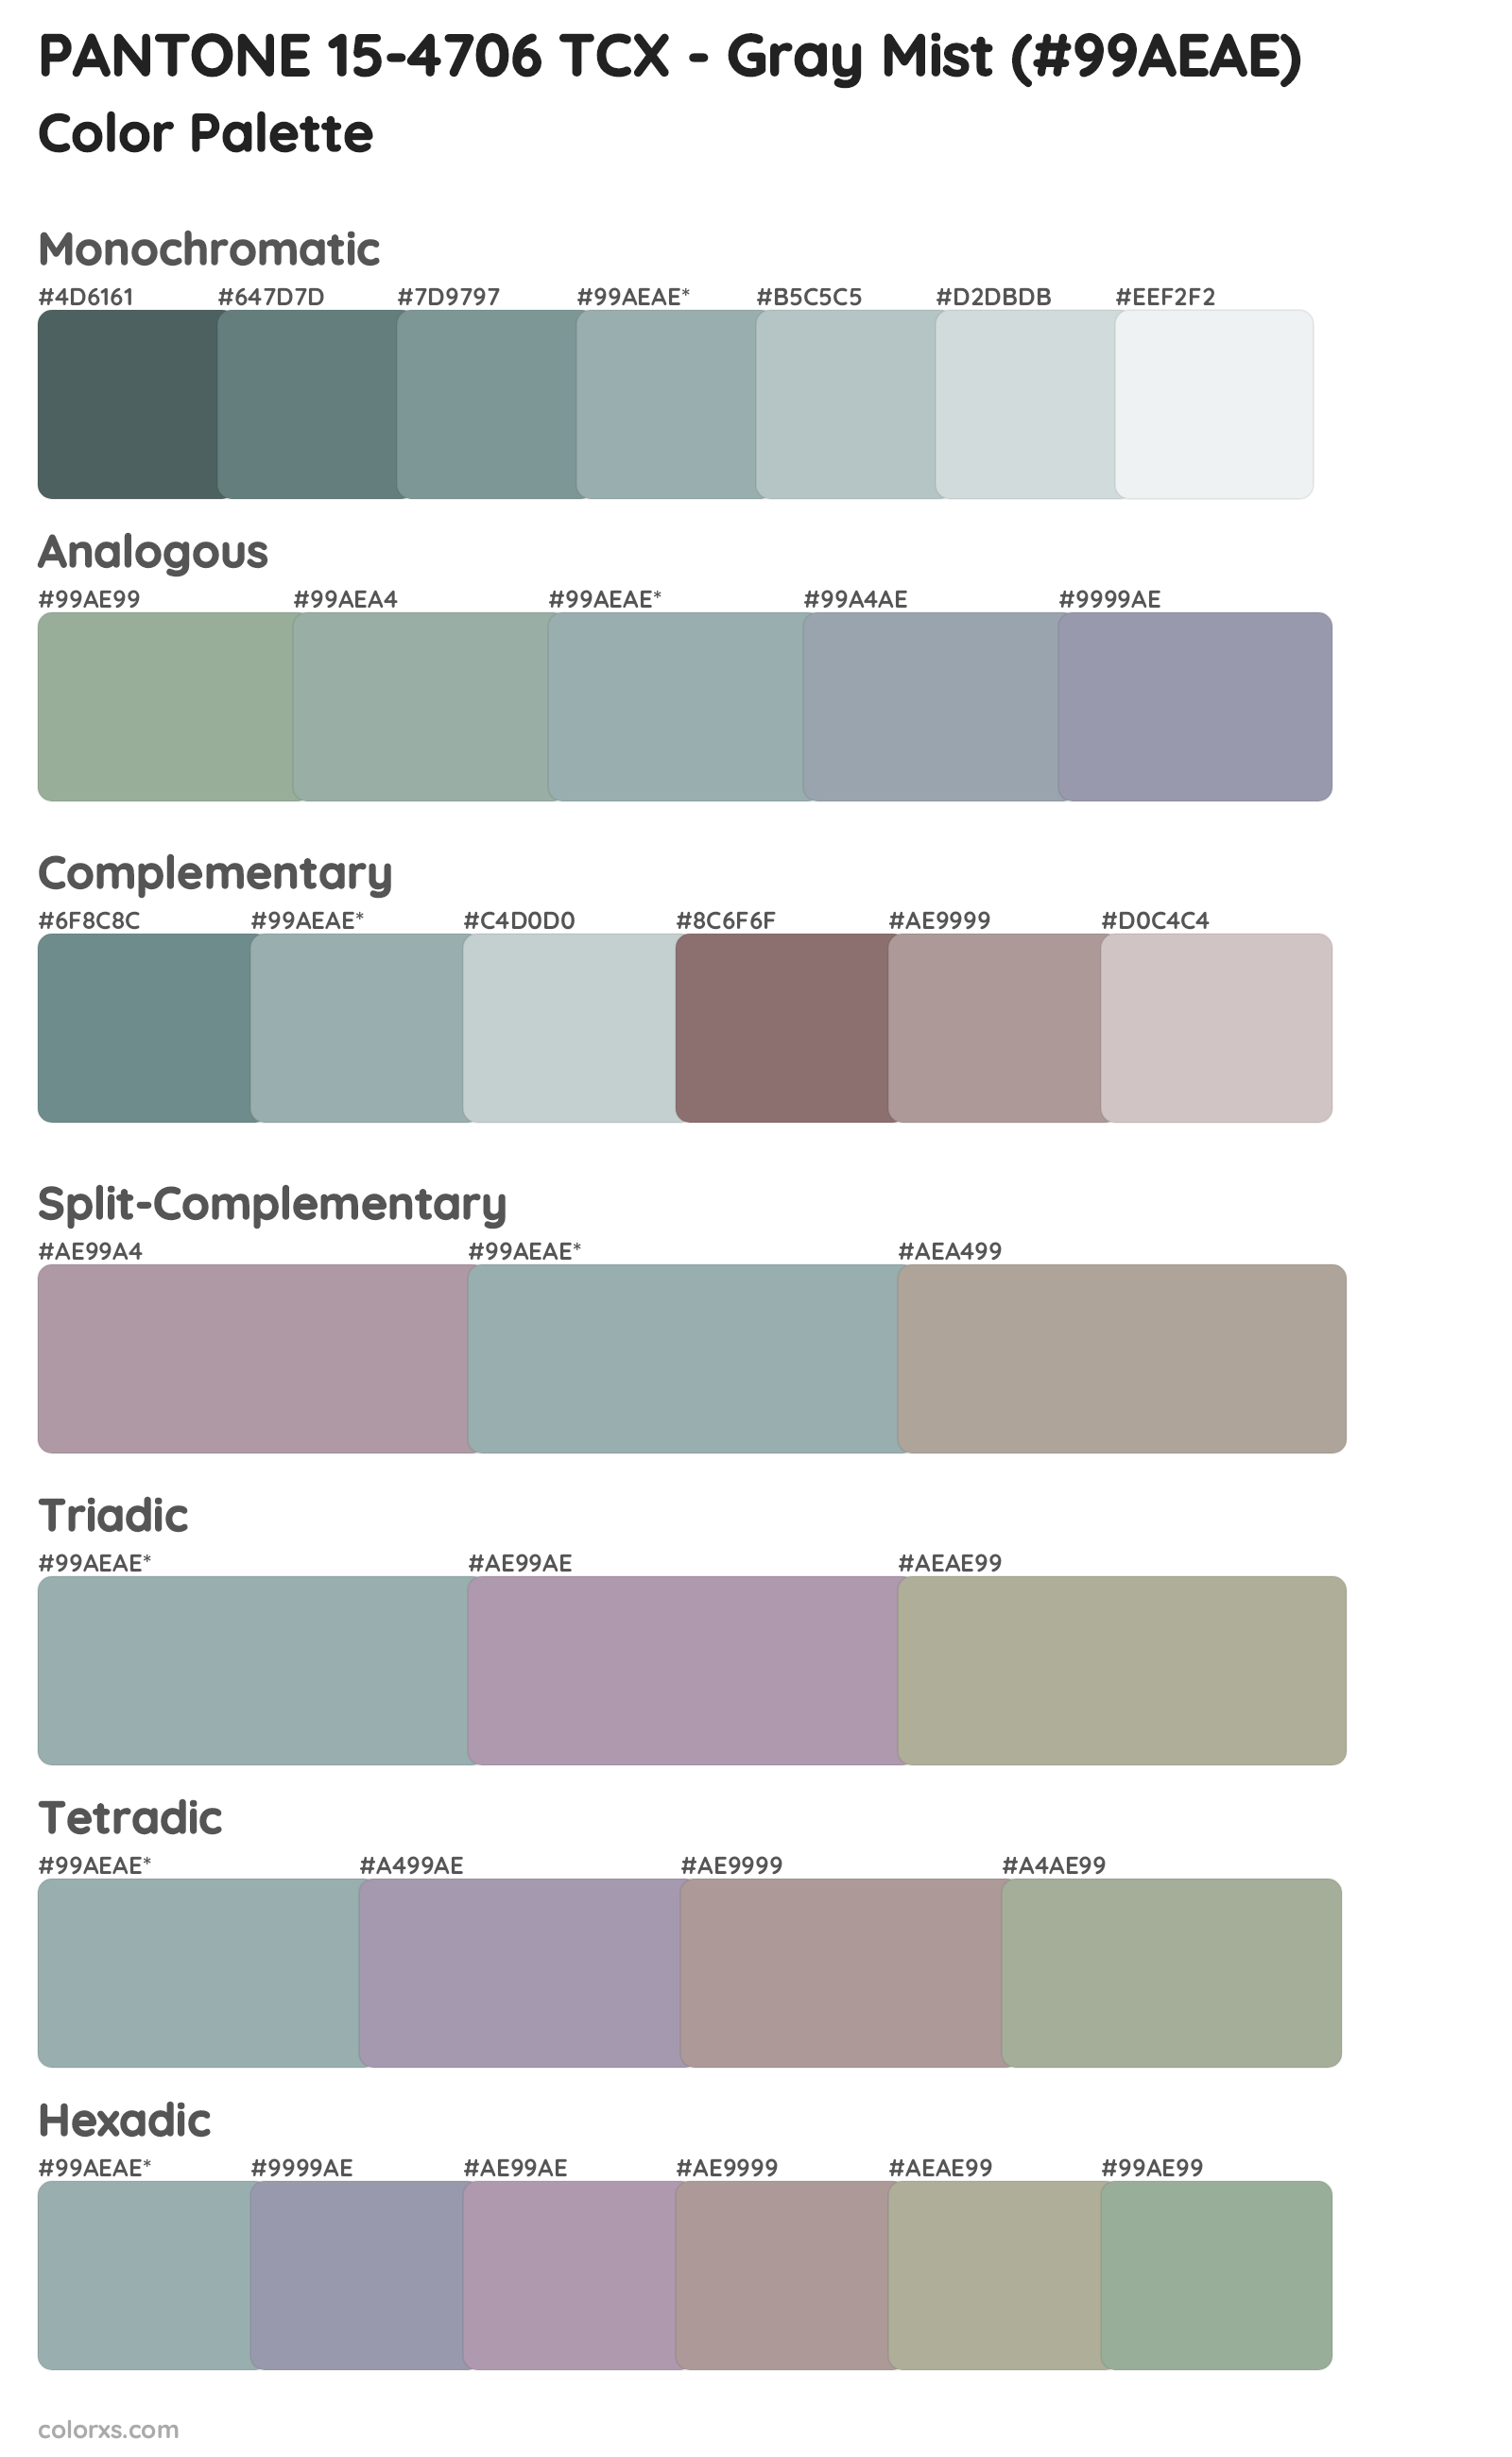 PANTONE 15-4706 TCX - Gray Mist Color Scheme Palettes